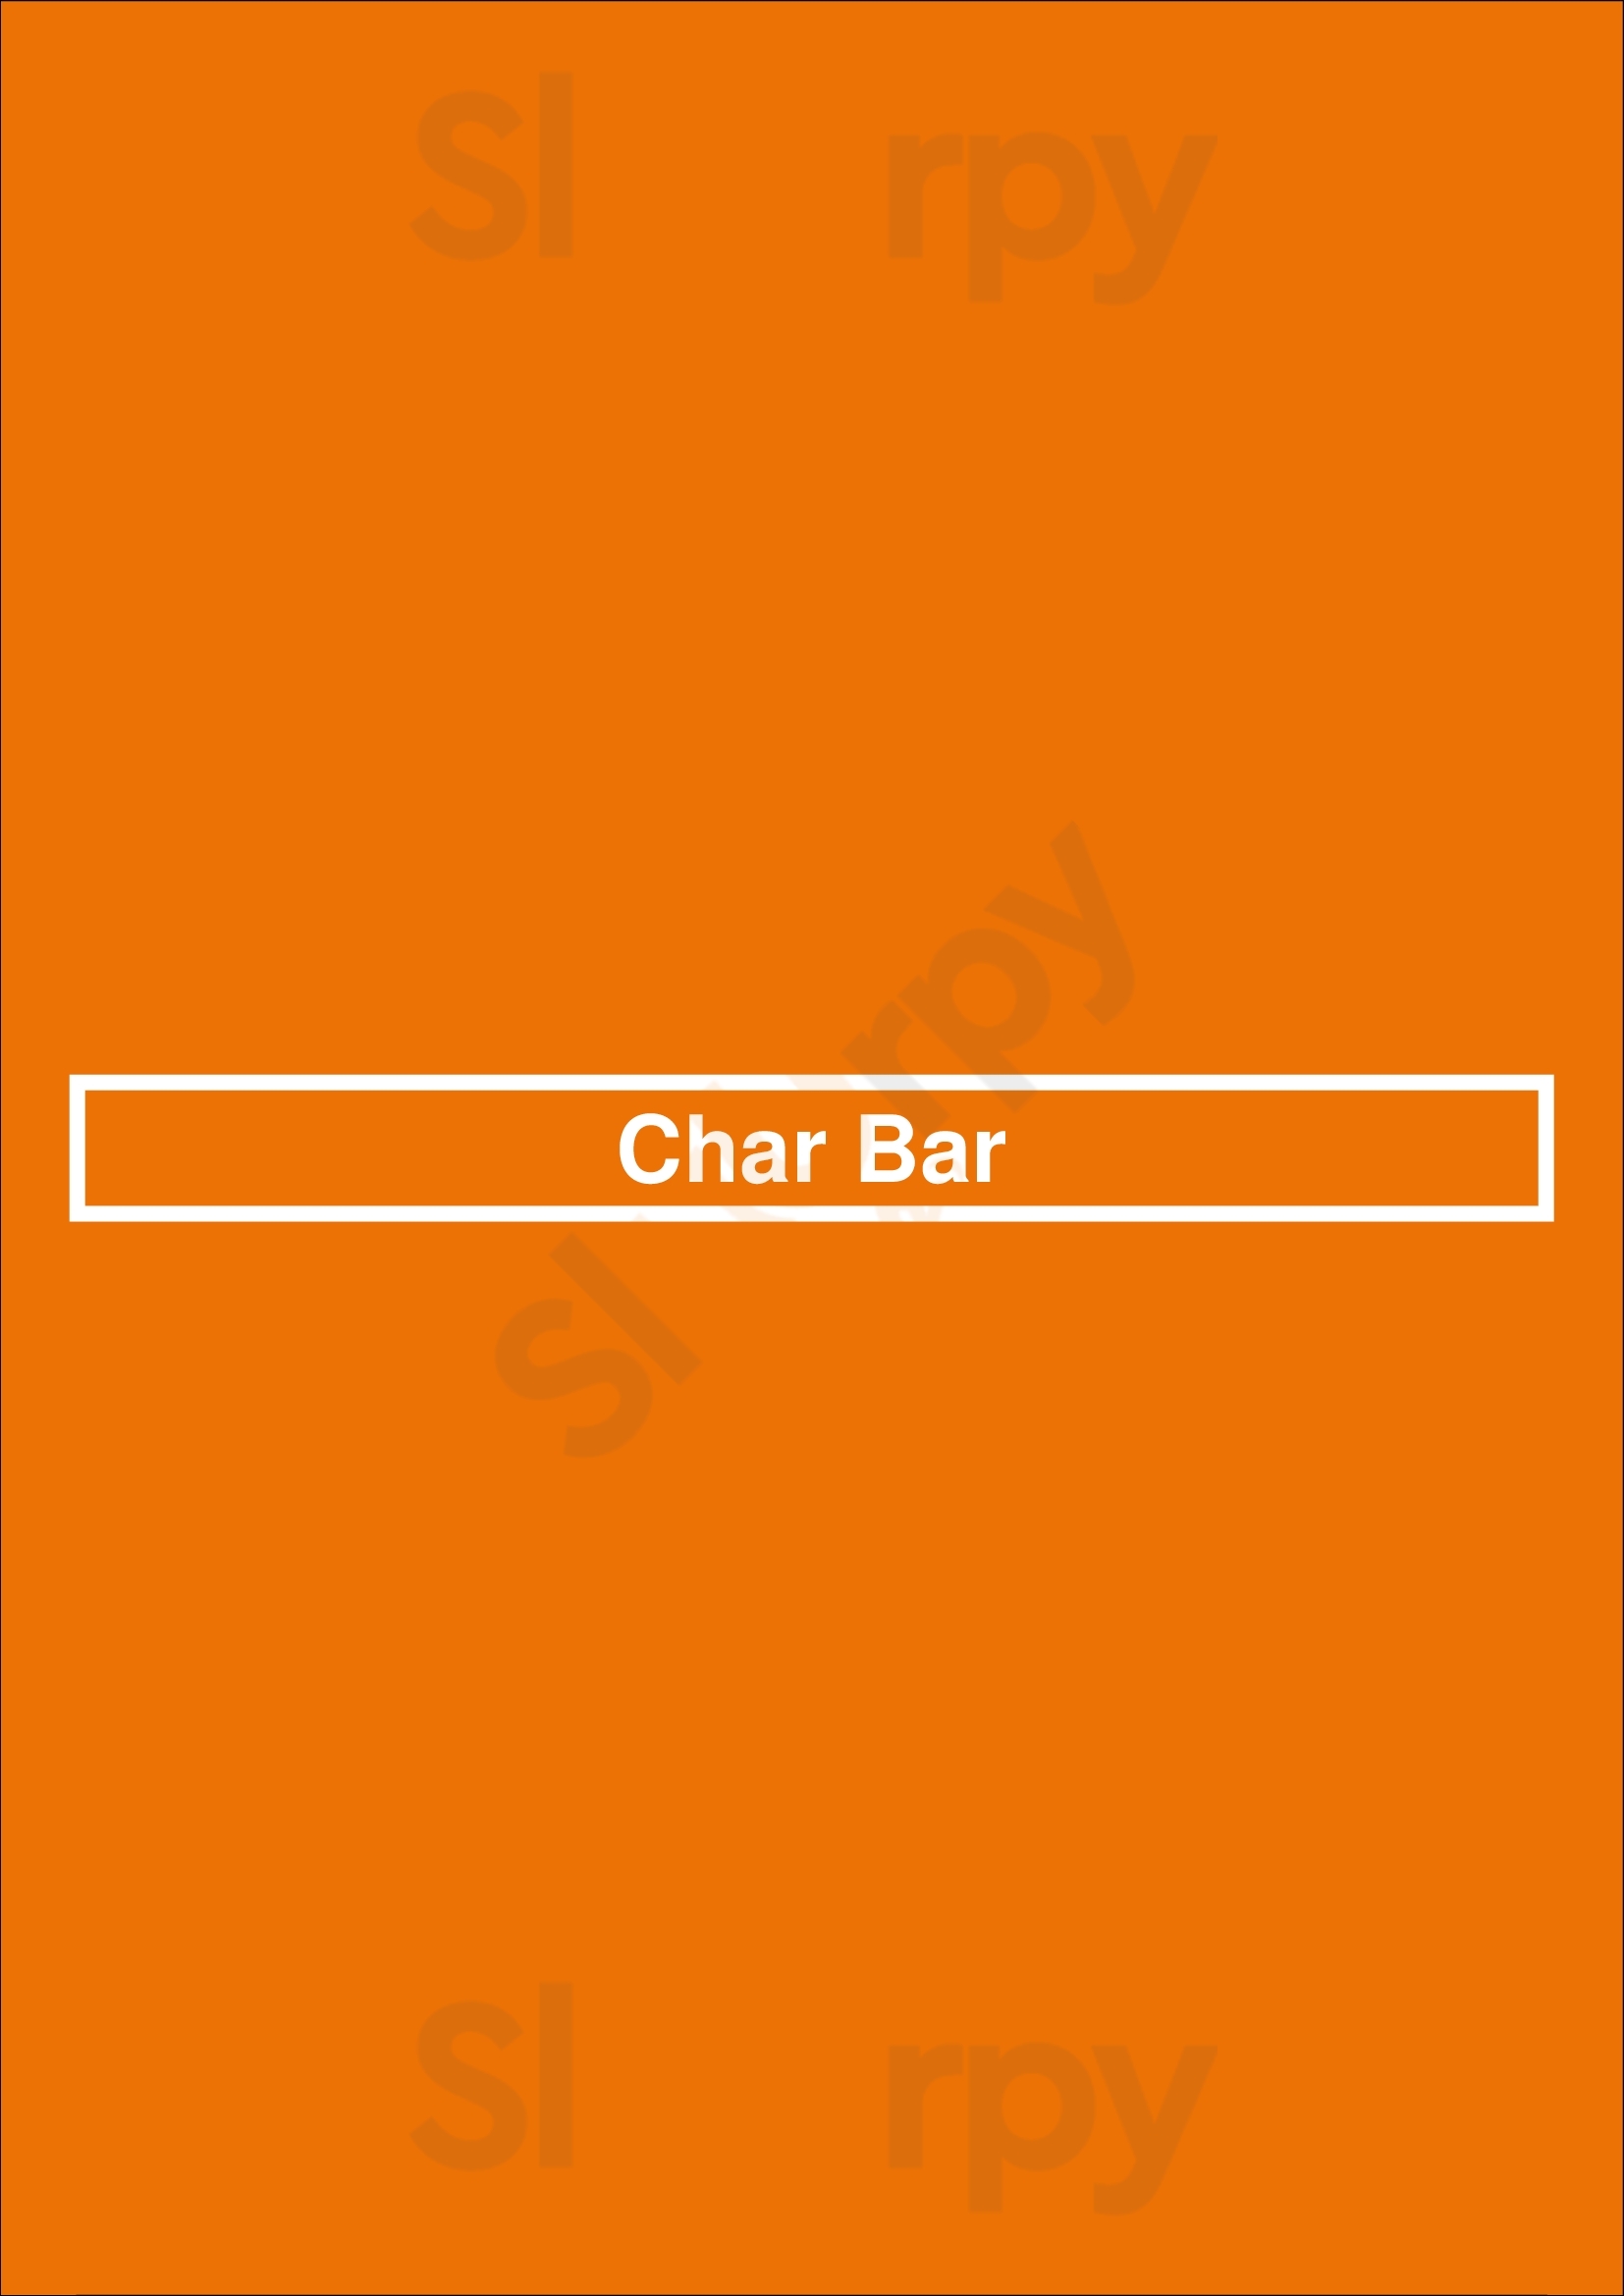 Char Bar Kansas City Menu - 1